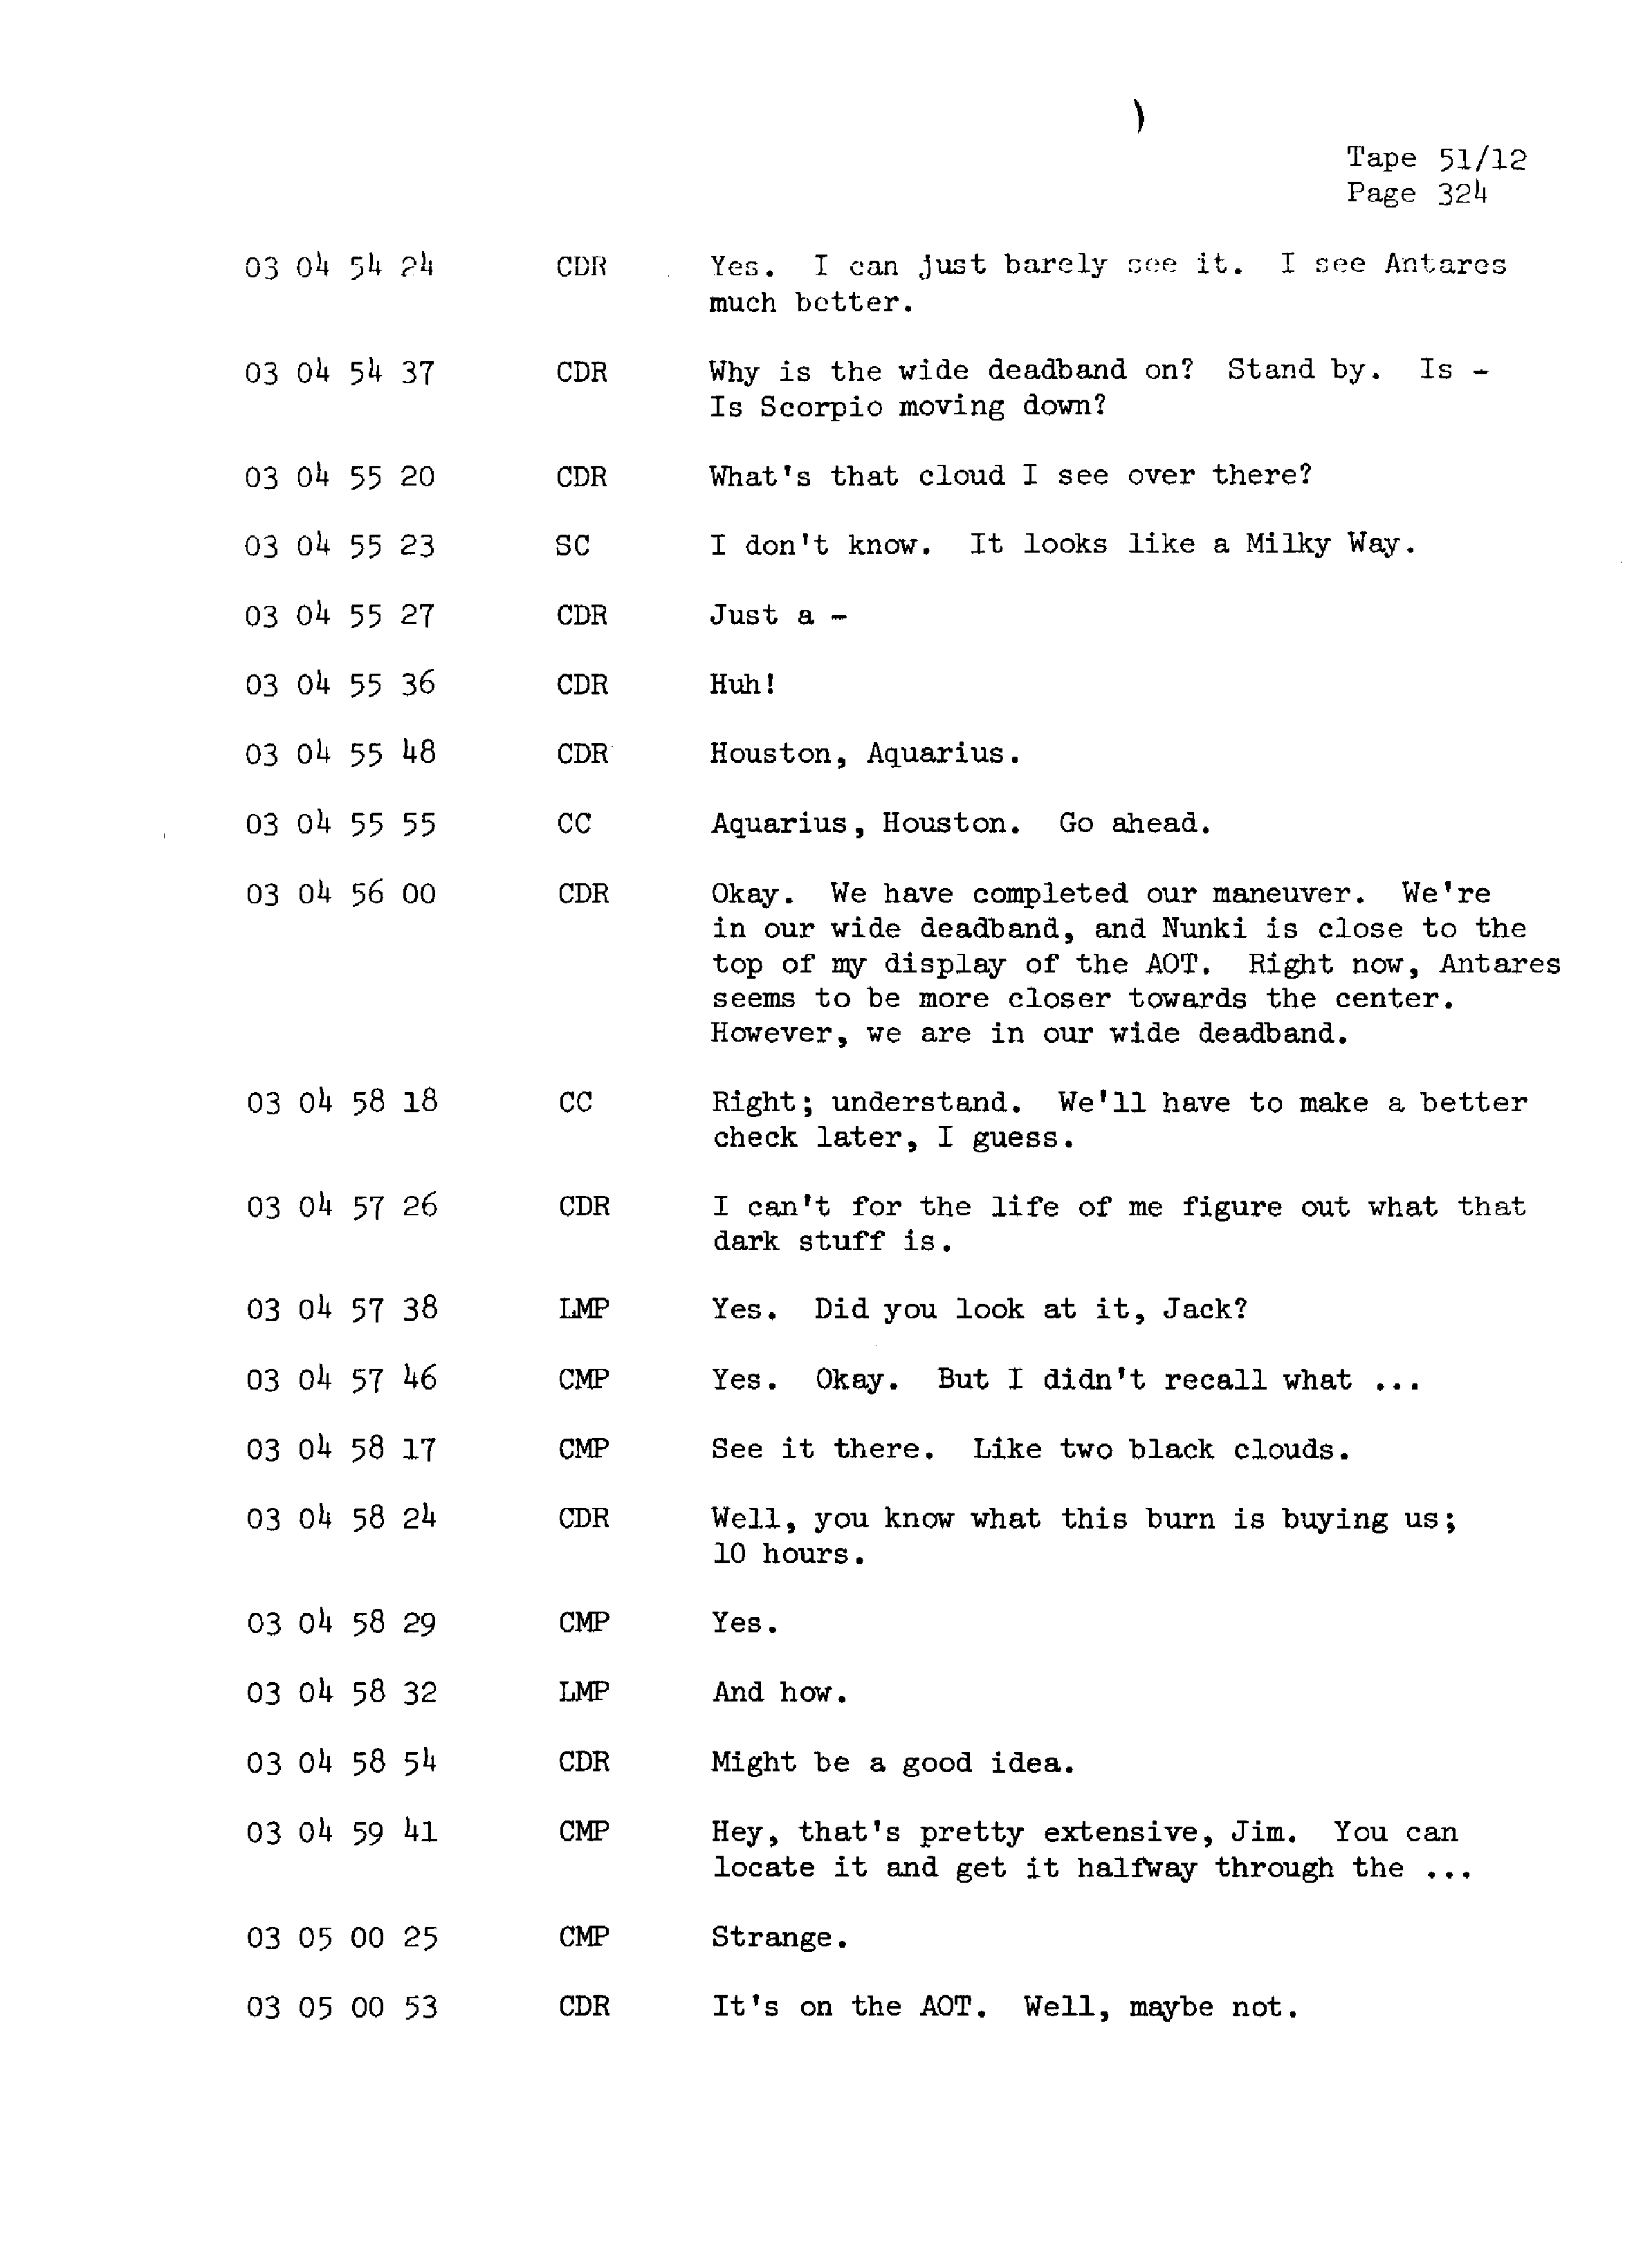 Page 331 of Apollo 13’s original transcript